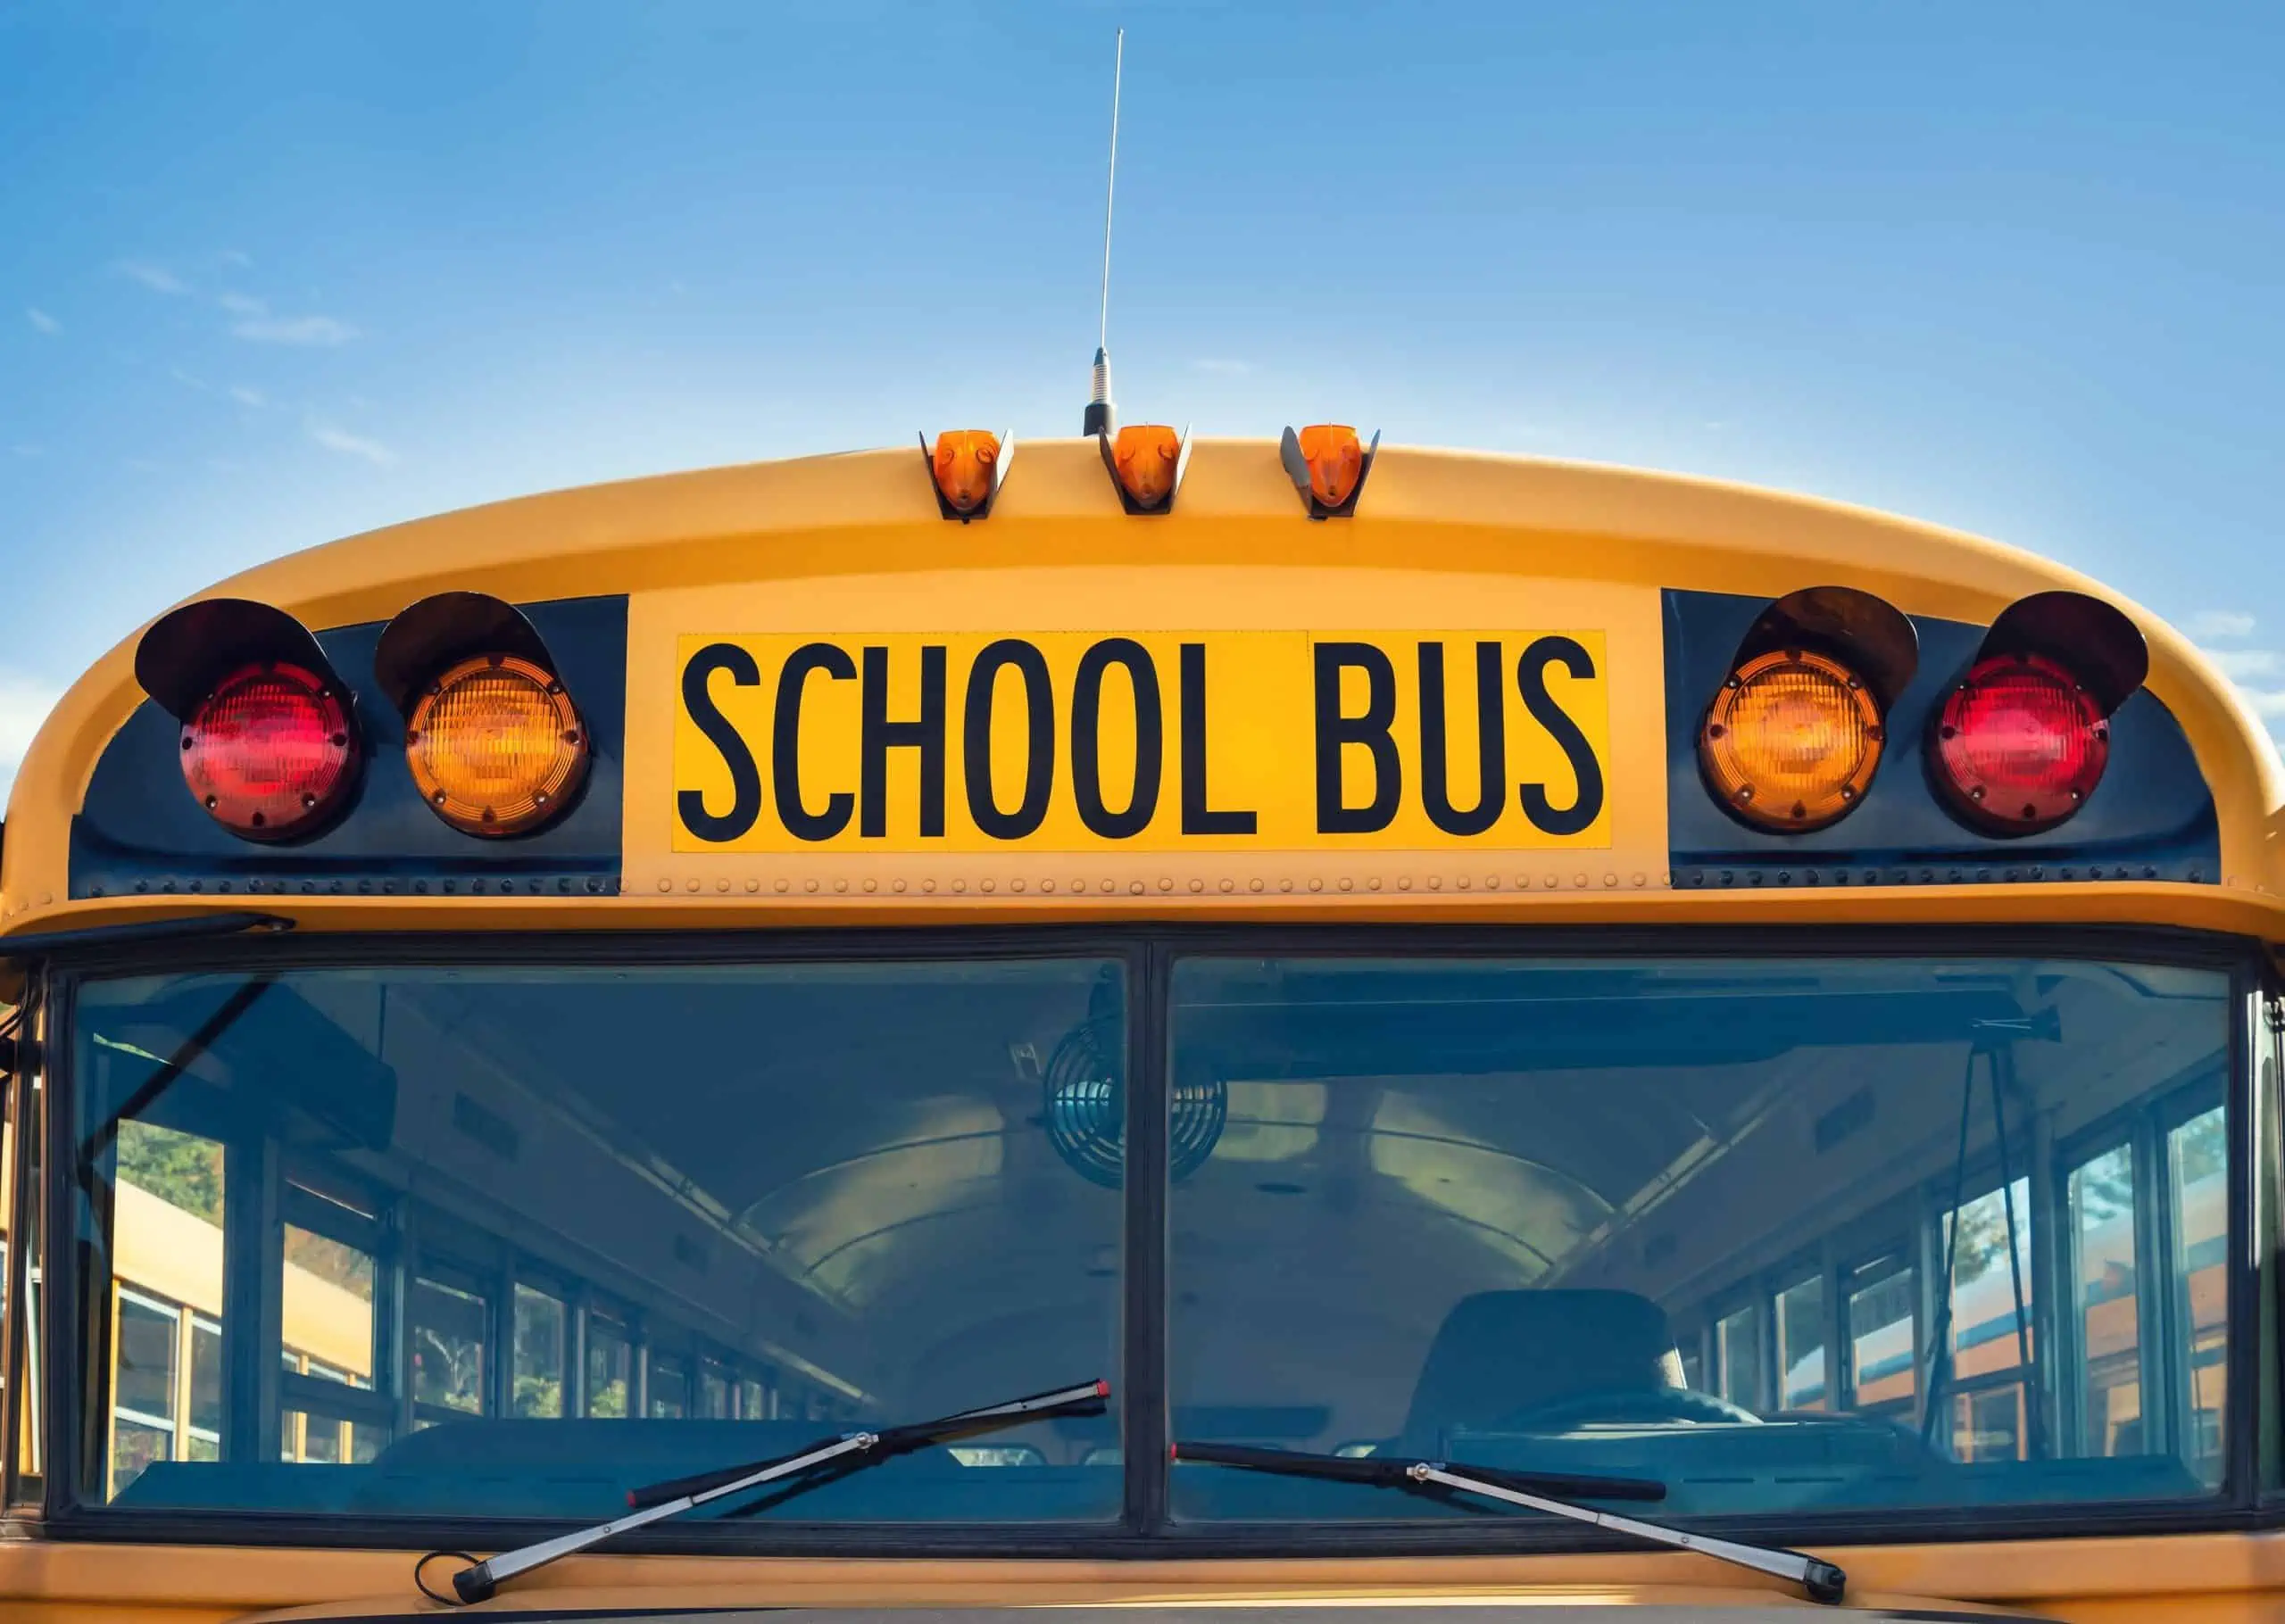 Halton school bus collision delays injuries students,